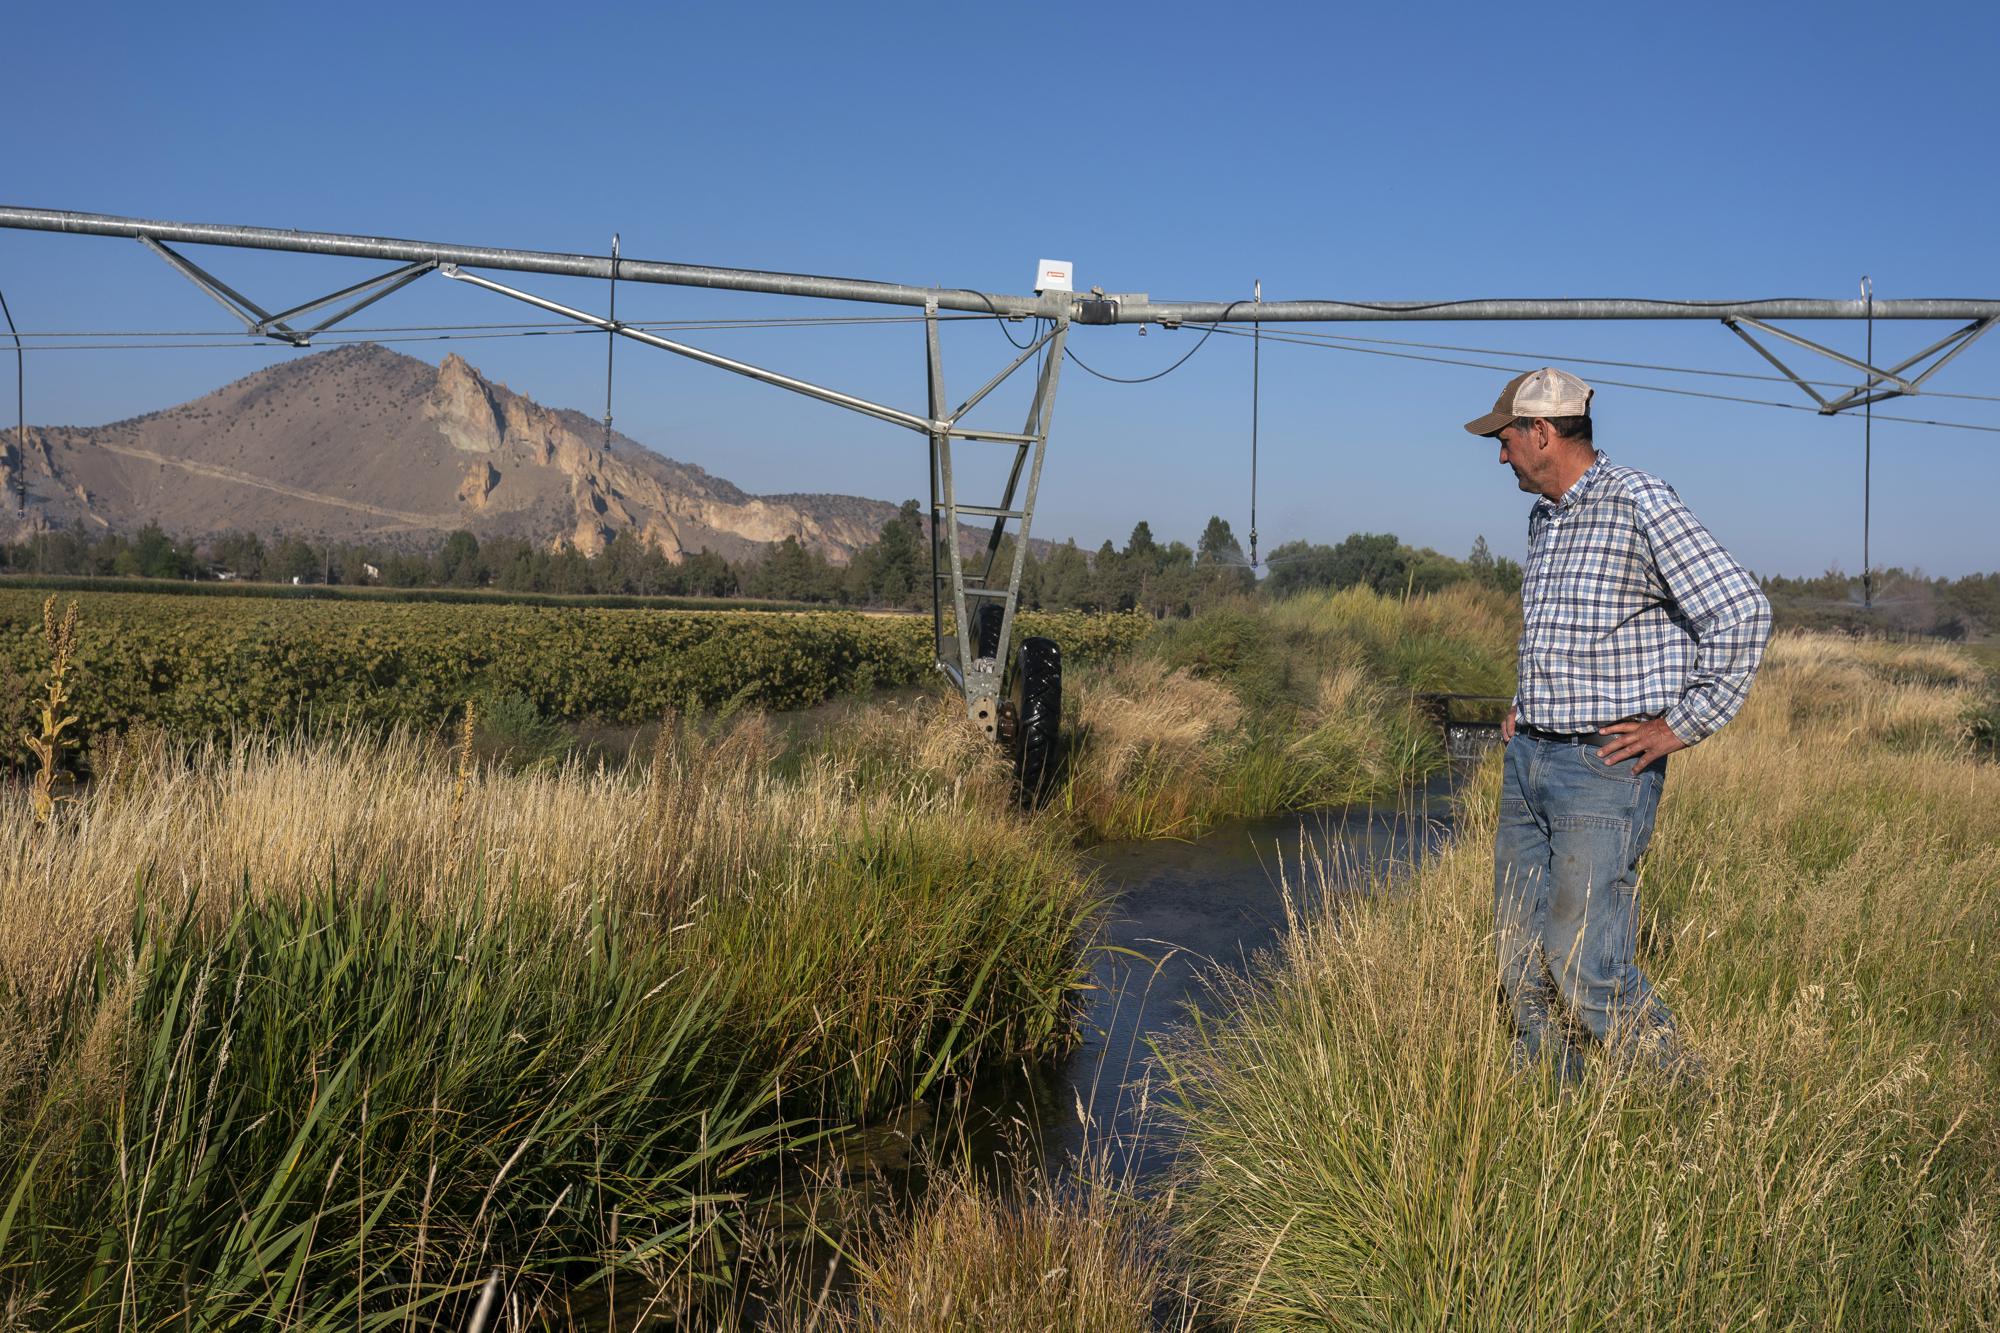 Las sequías asolan el oeste, los problemas de disponibilidad de agua son una carga para los agricultores